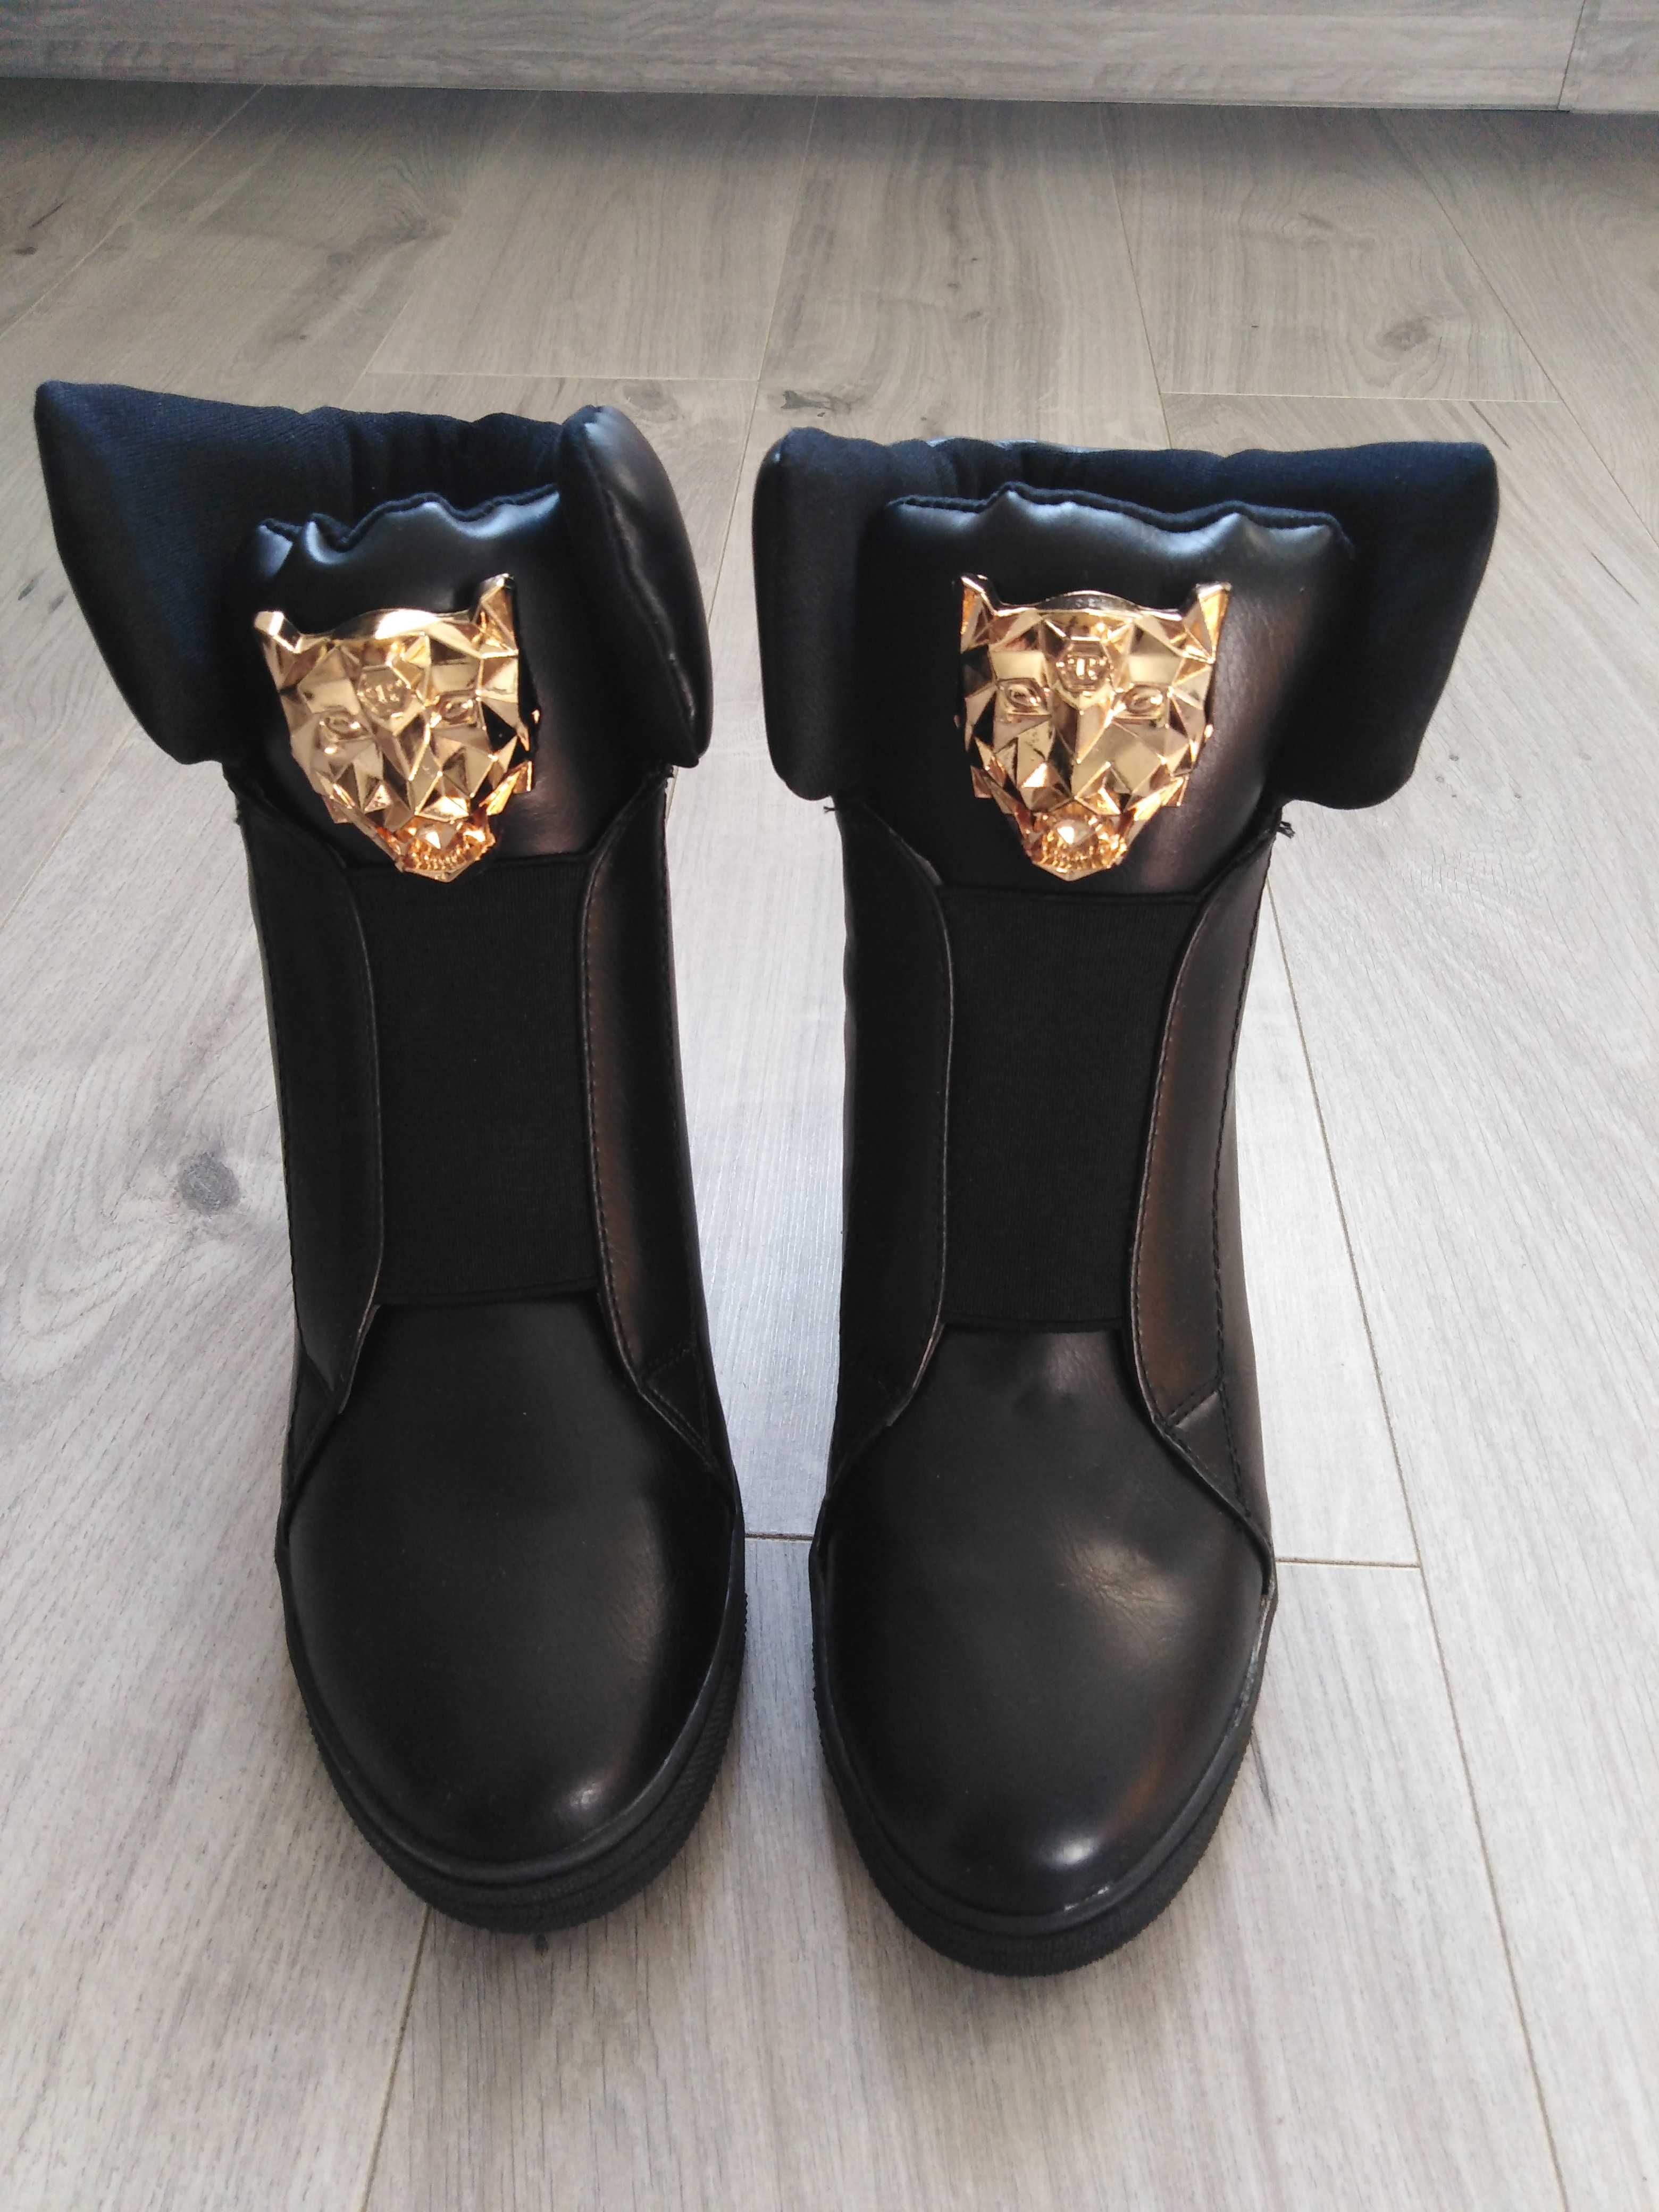 NOWE Czarne buty na koturnie ze złotym lwem 39 na zimę jesień